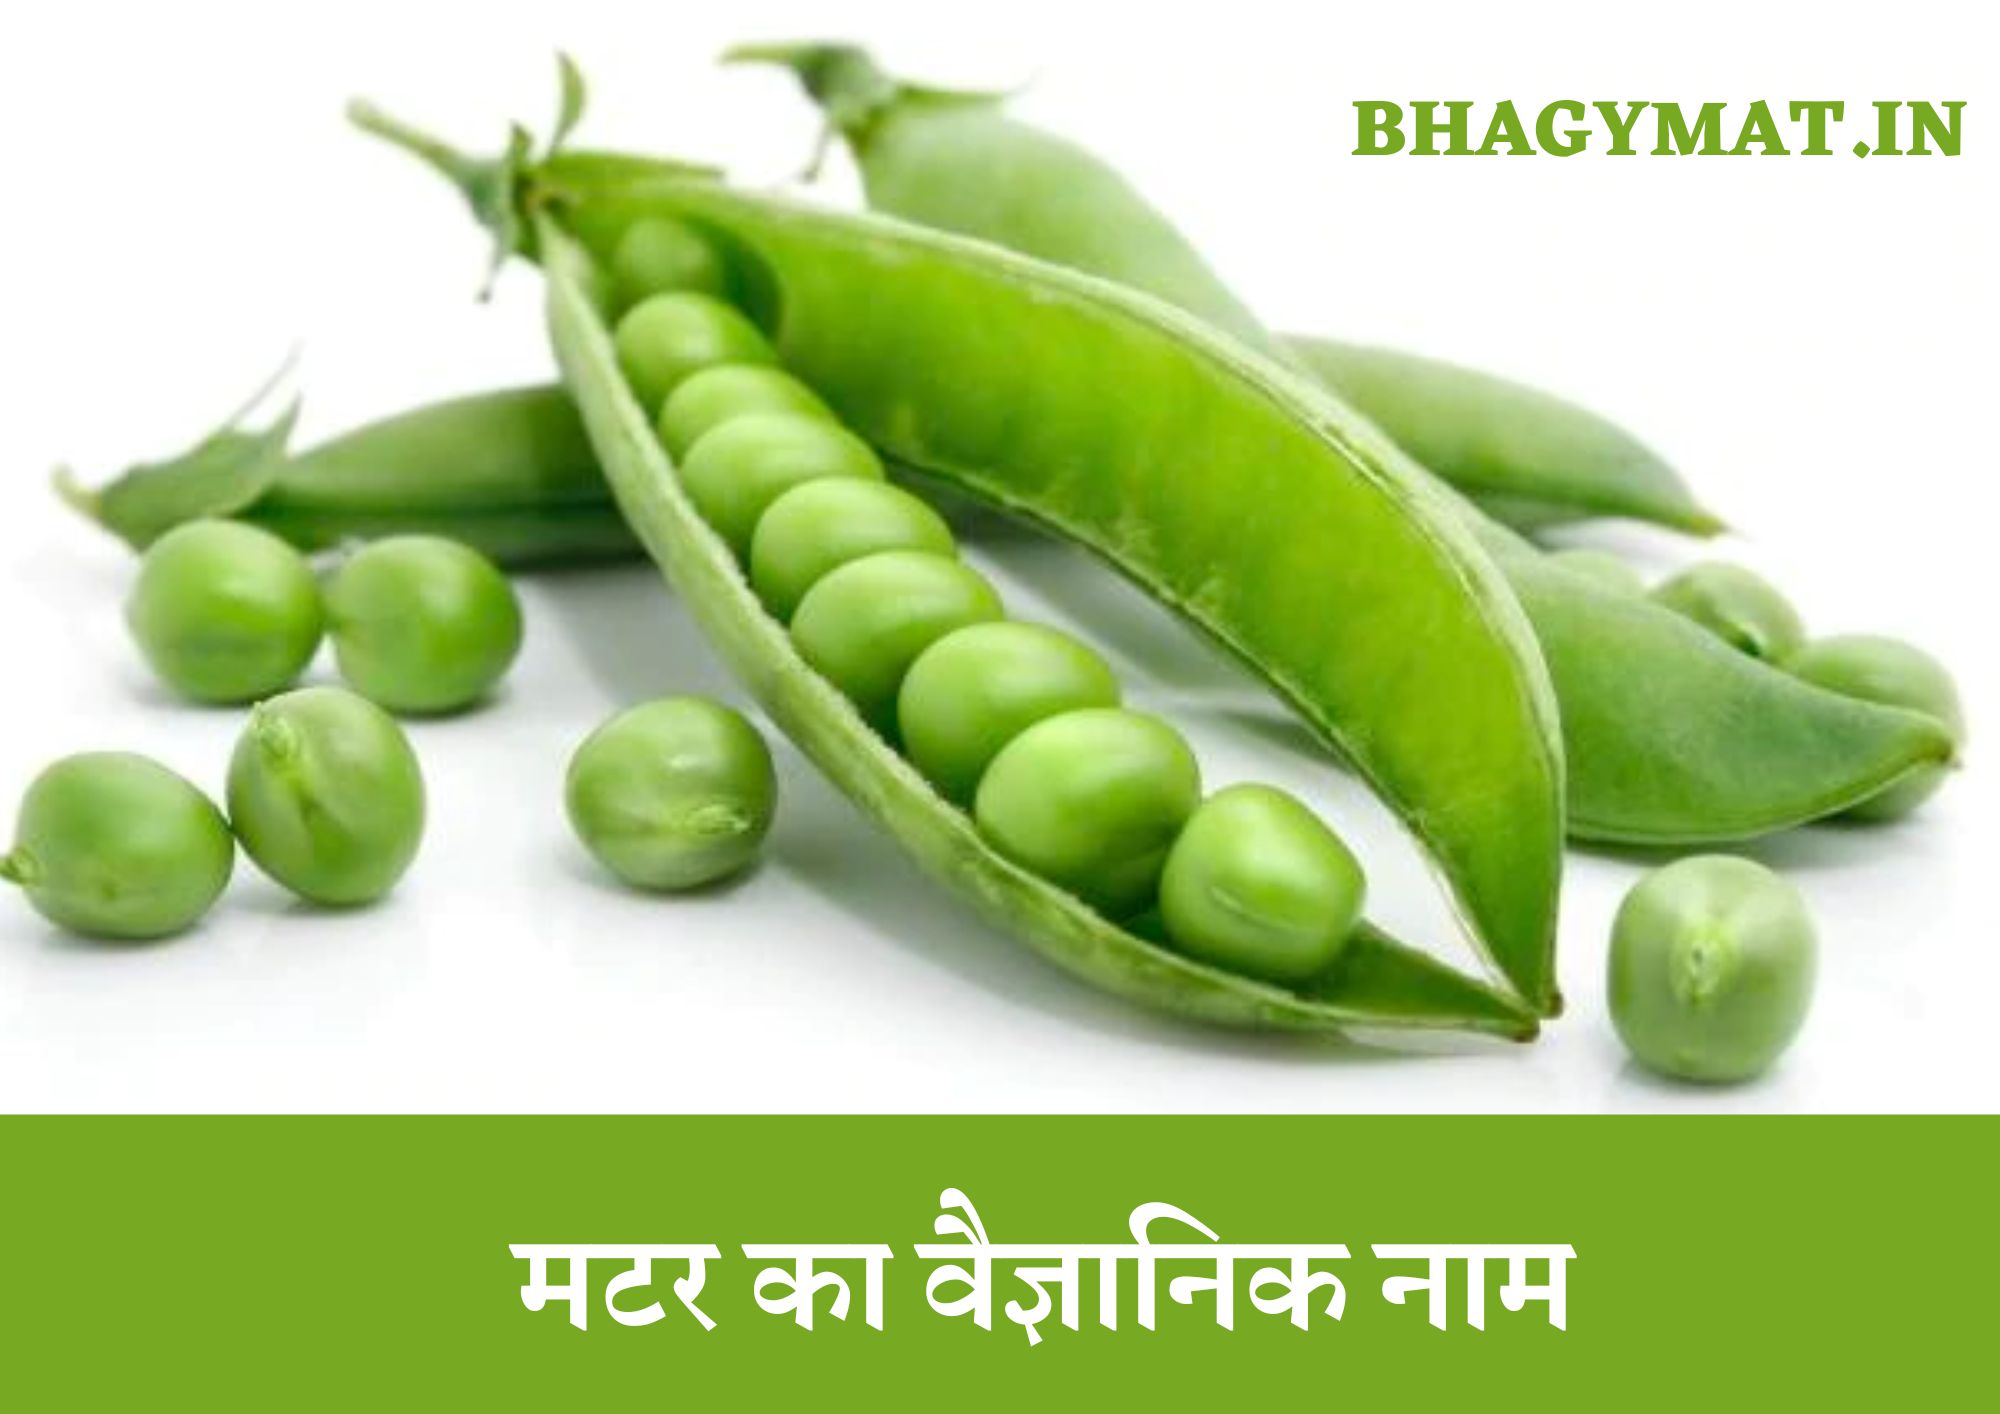 मटर का वैज्ञानिक नाम क्या है (Scientific Name Of Pea In Hindi) - Pea Scientific Name In Hindi - Matar Ka Vaigyanik Naam Kya Hai